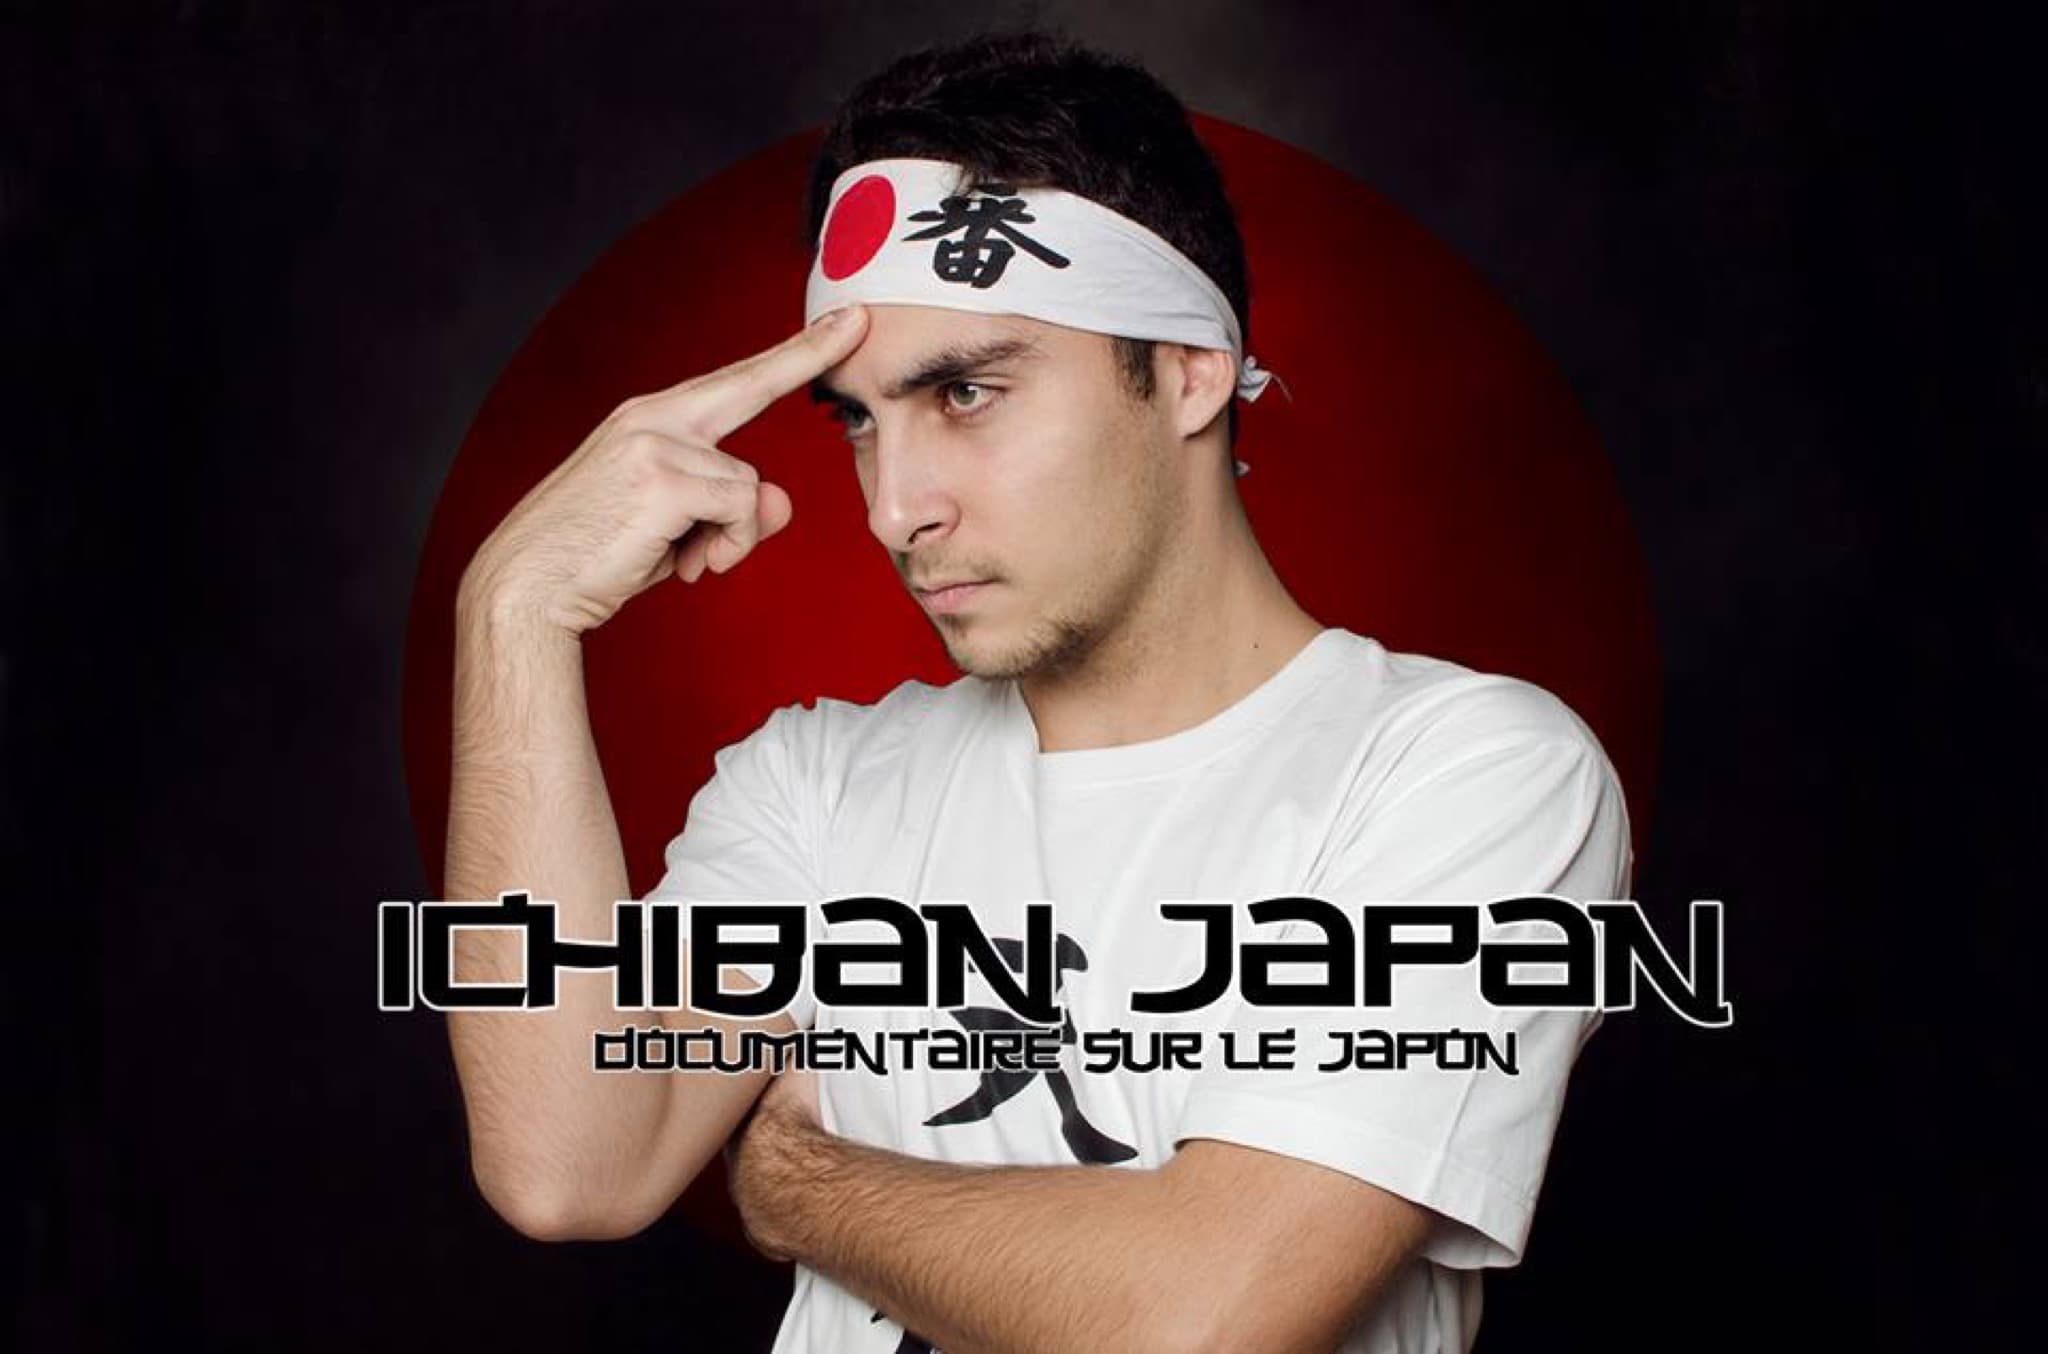 Ichiban Japan, documentaire sur le Japon